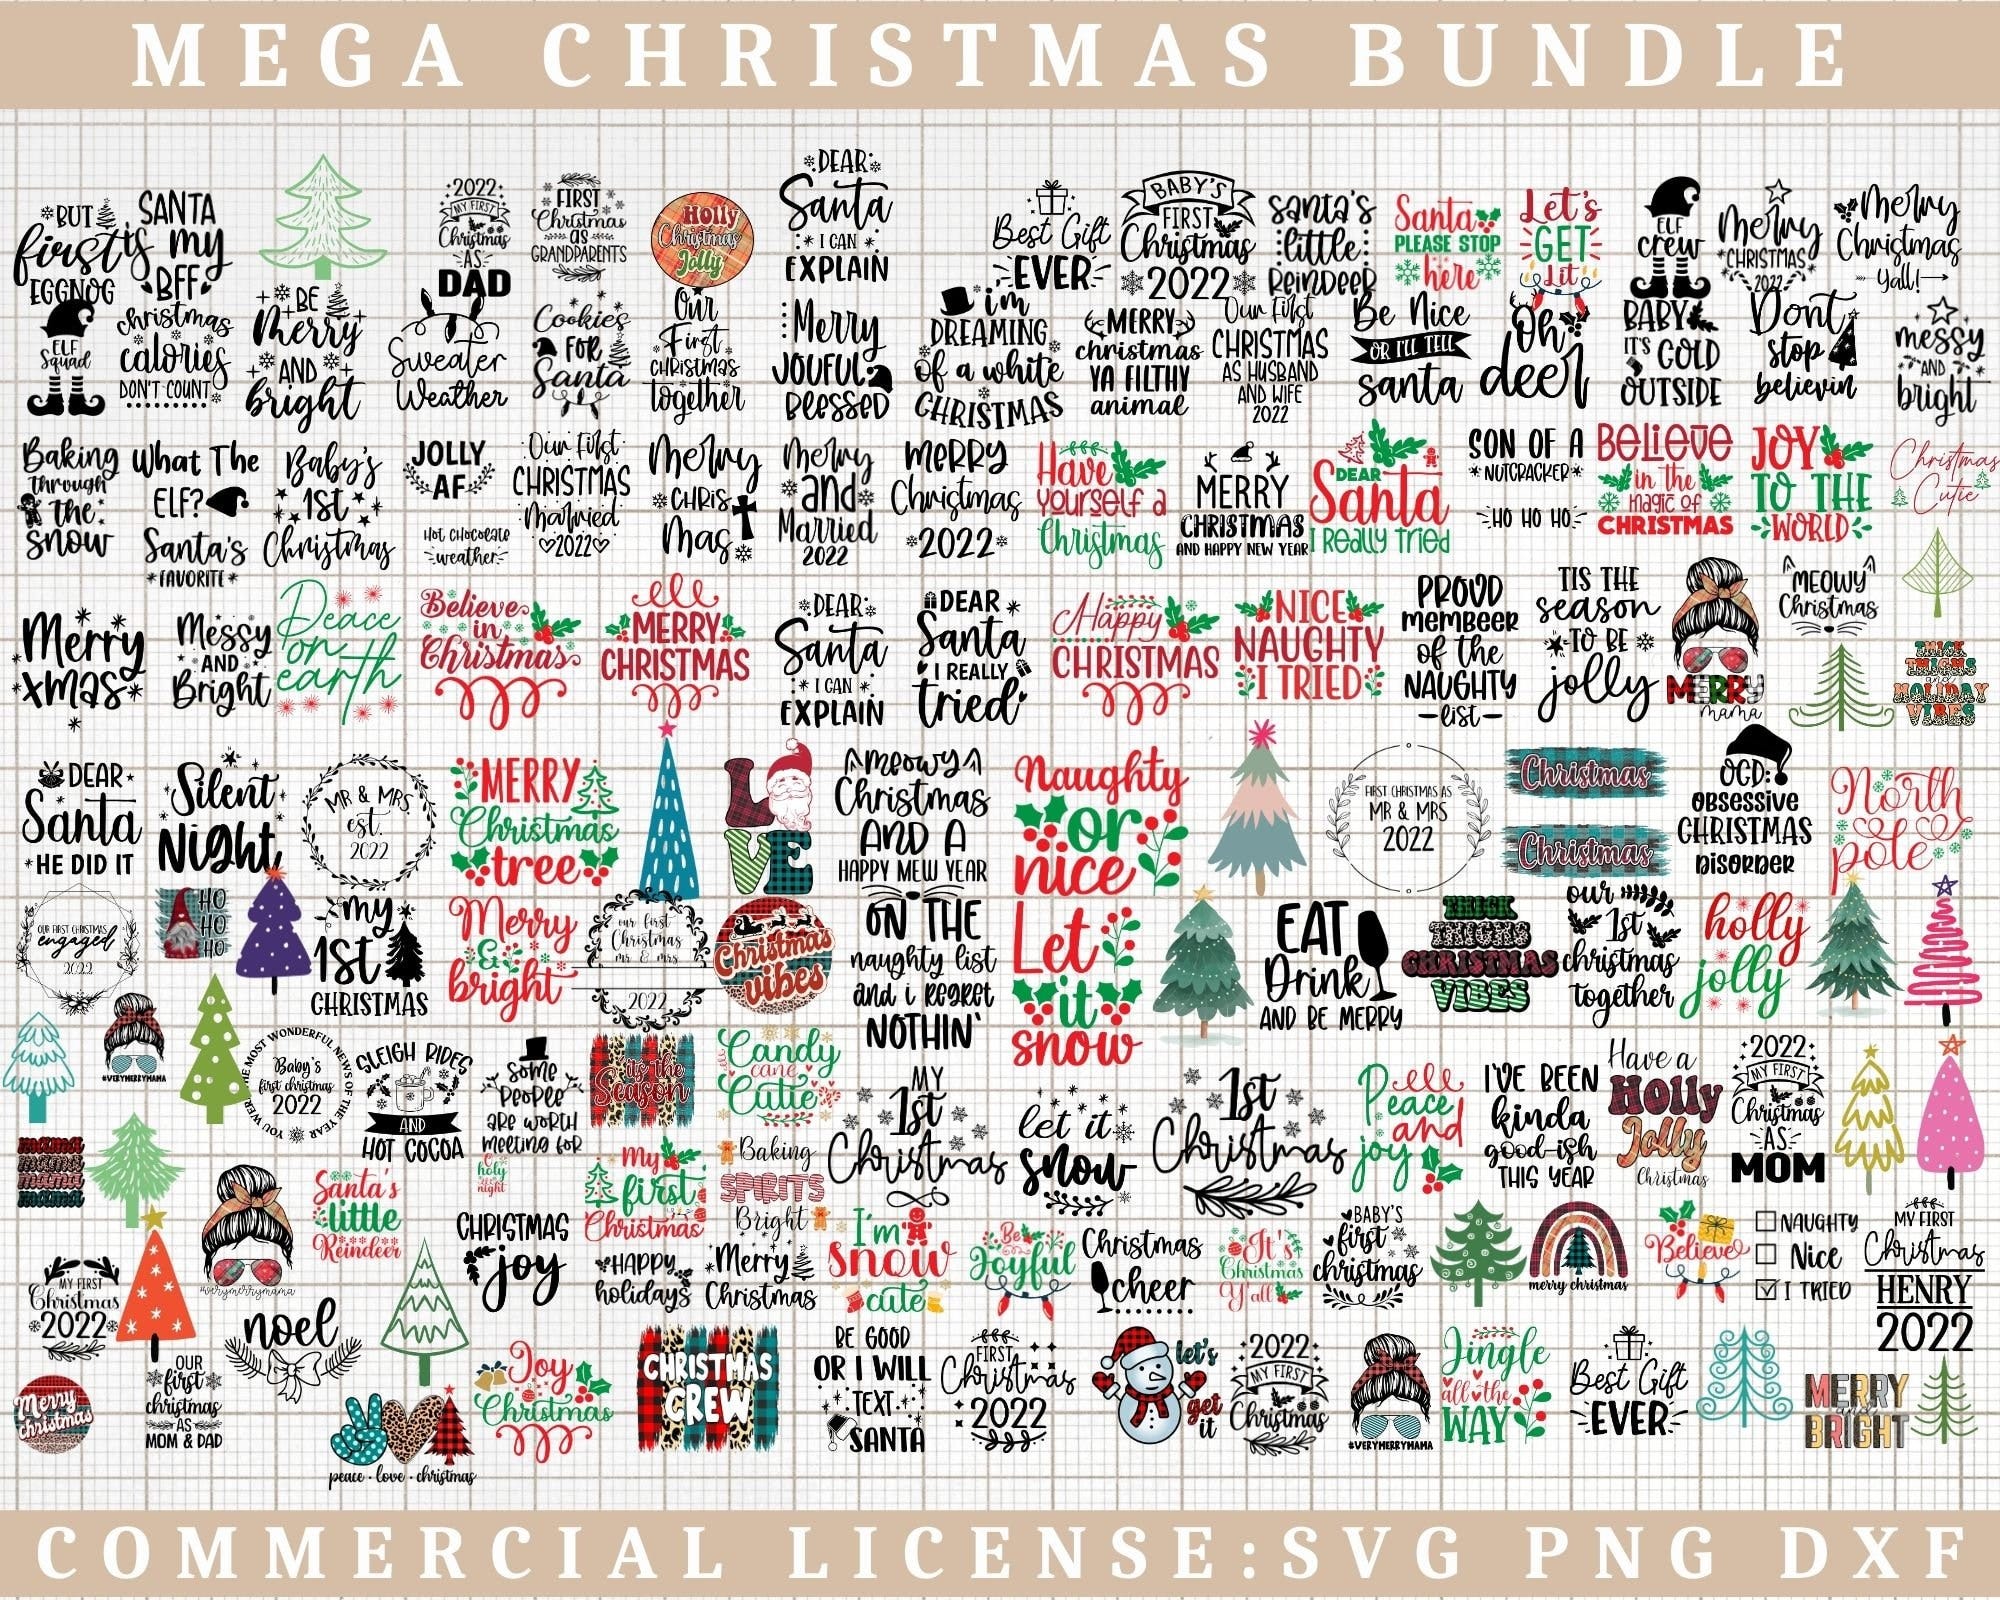 CHRISTMAS MEGA BUNDLE Svg,Christmas Svg Bundle,Christmas 2022 svg png,Christmas svg,Winter svg,Holidays svg,Commercial Use Cut Files Cricut